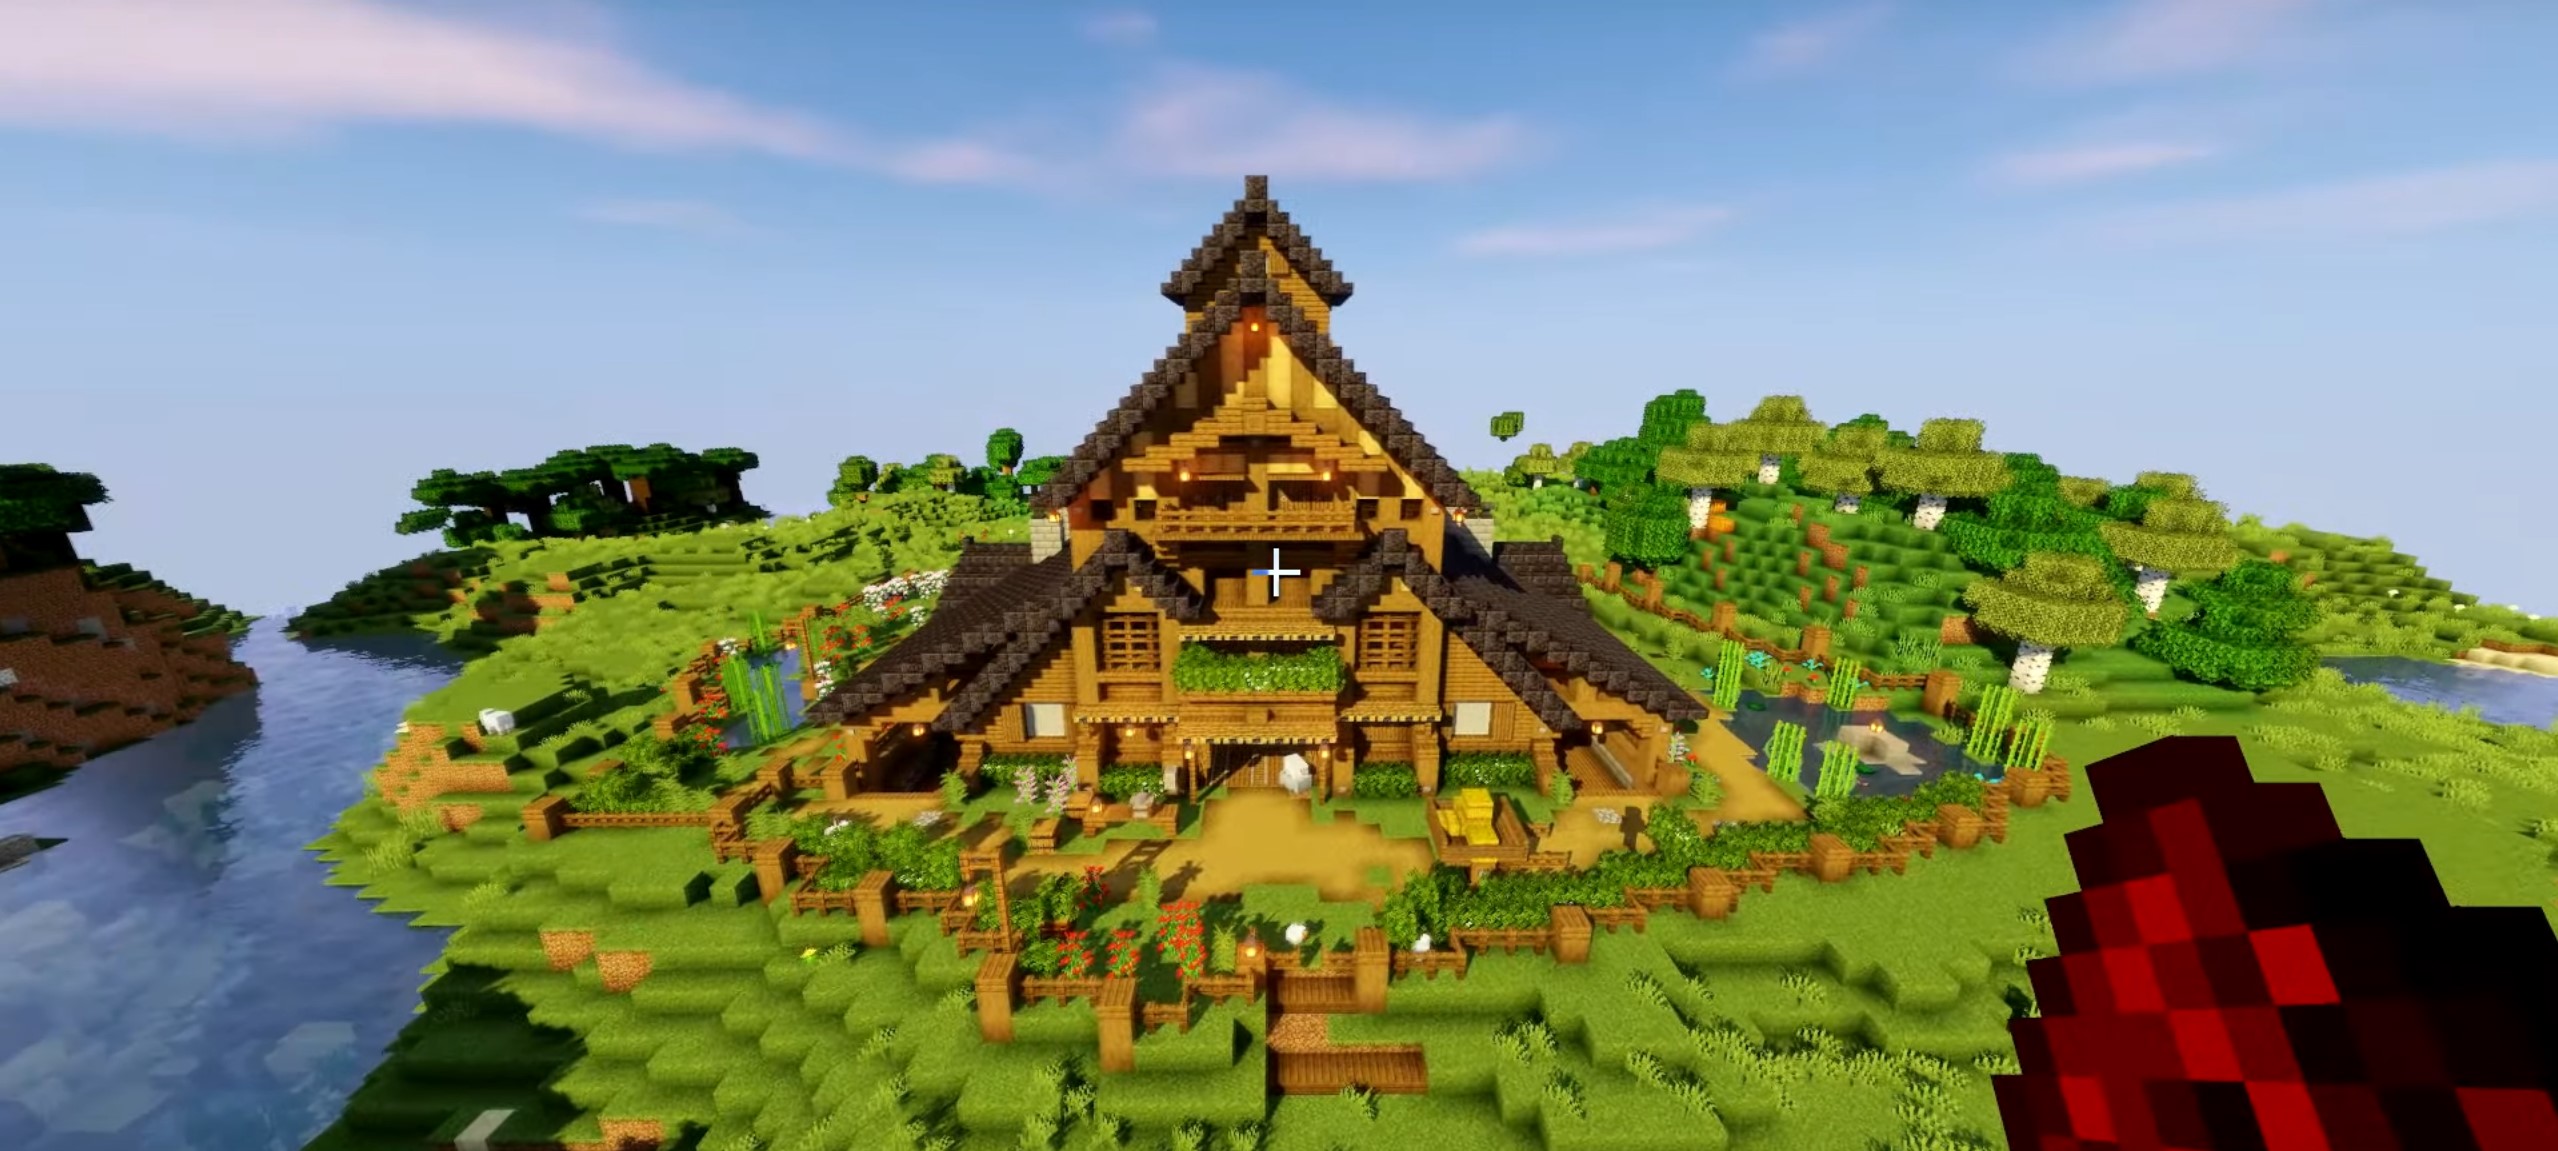 Ultimate Farm Barn minecraft building idea